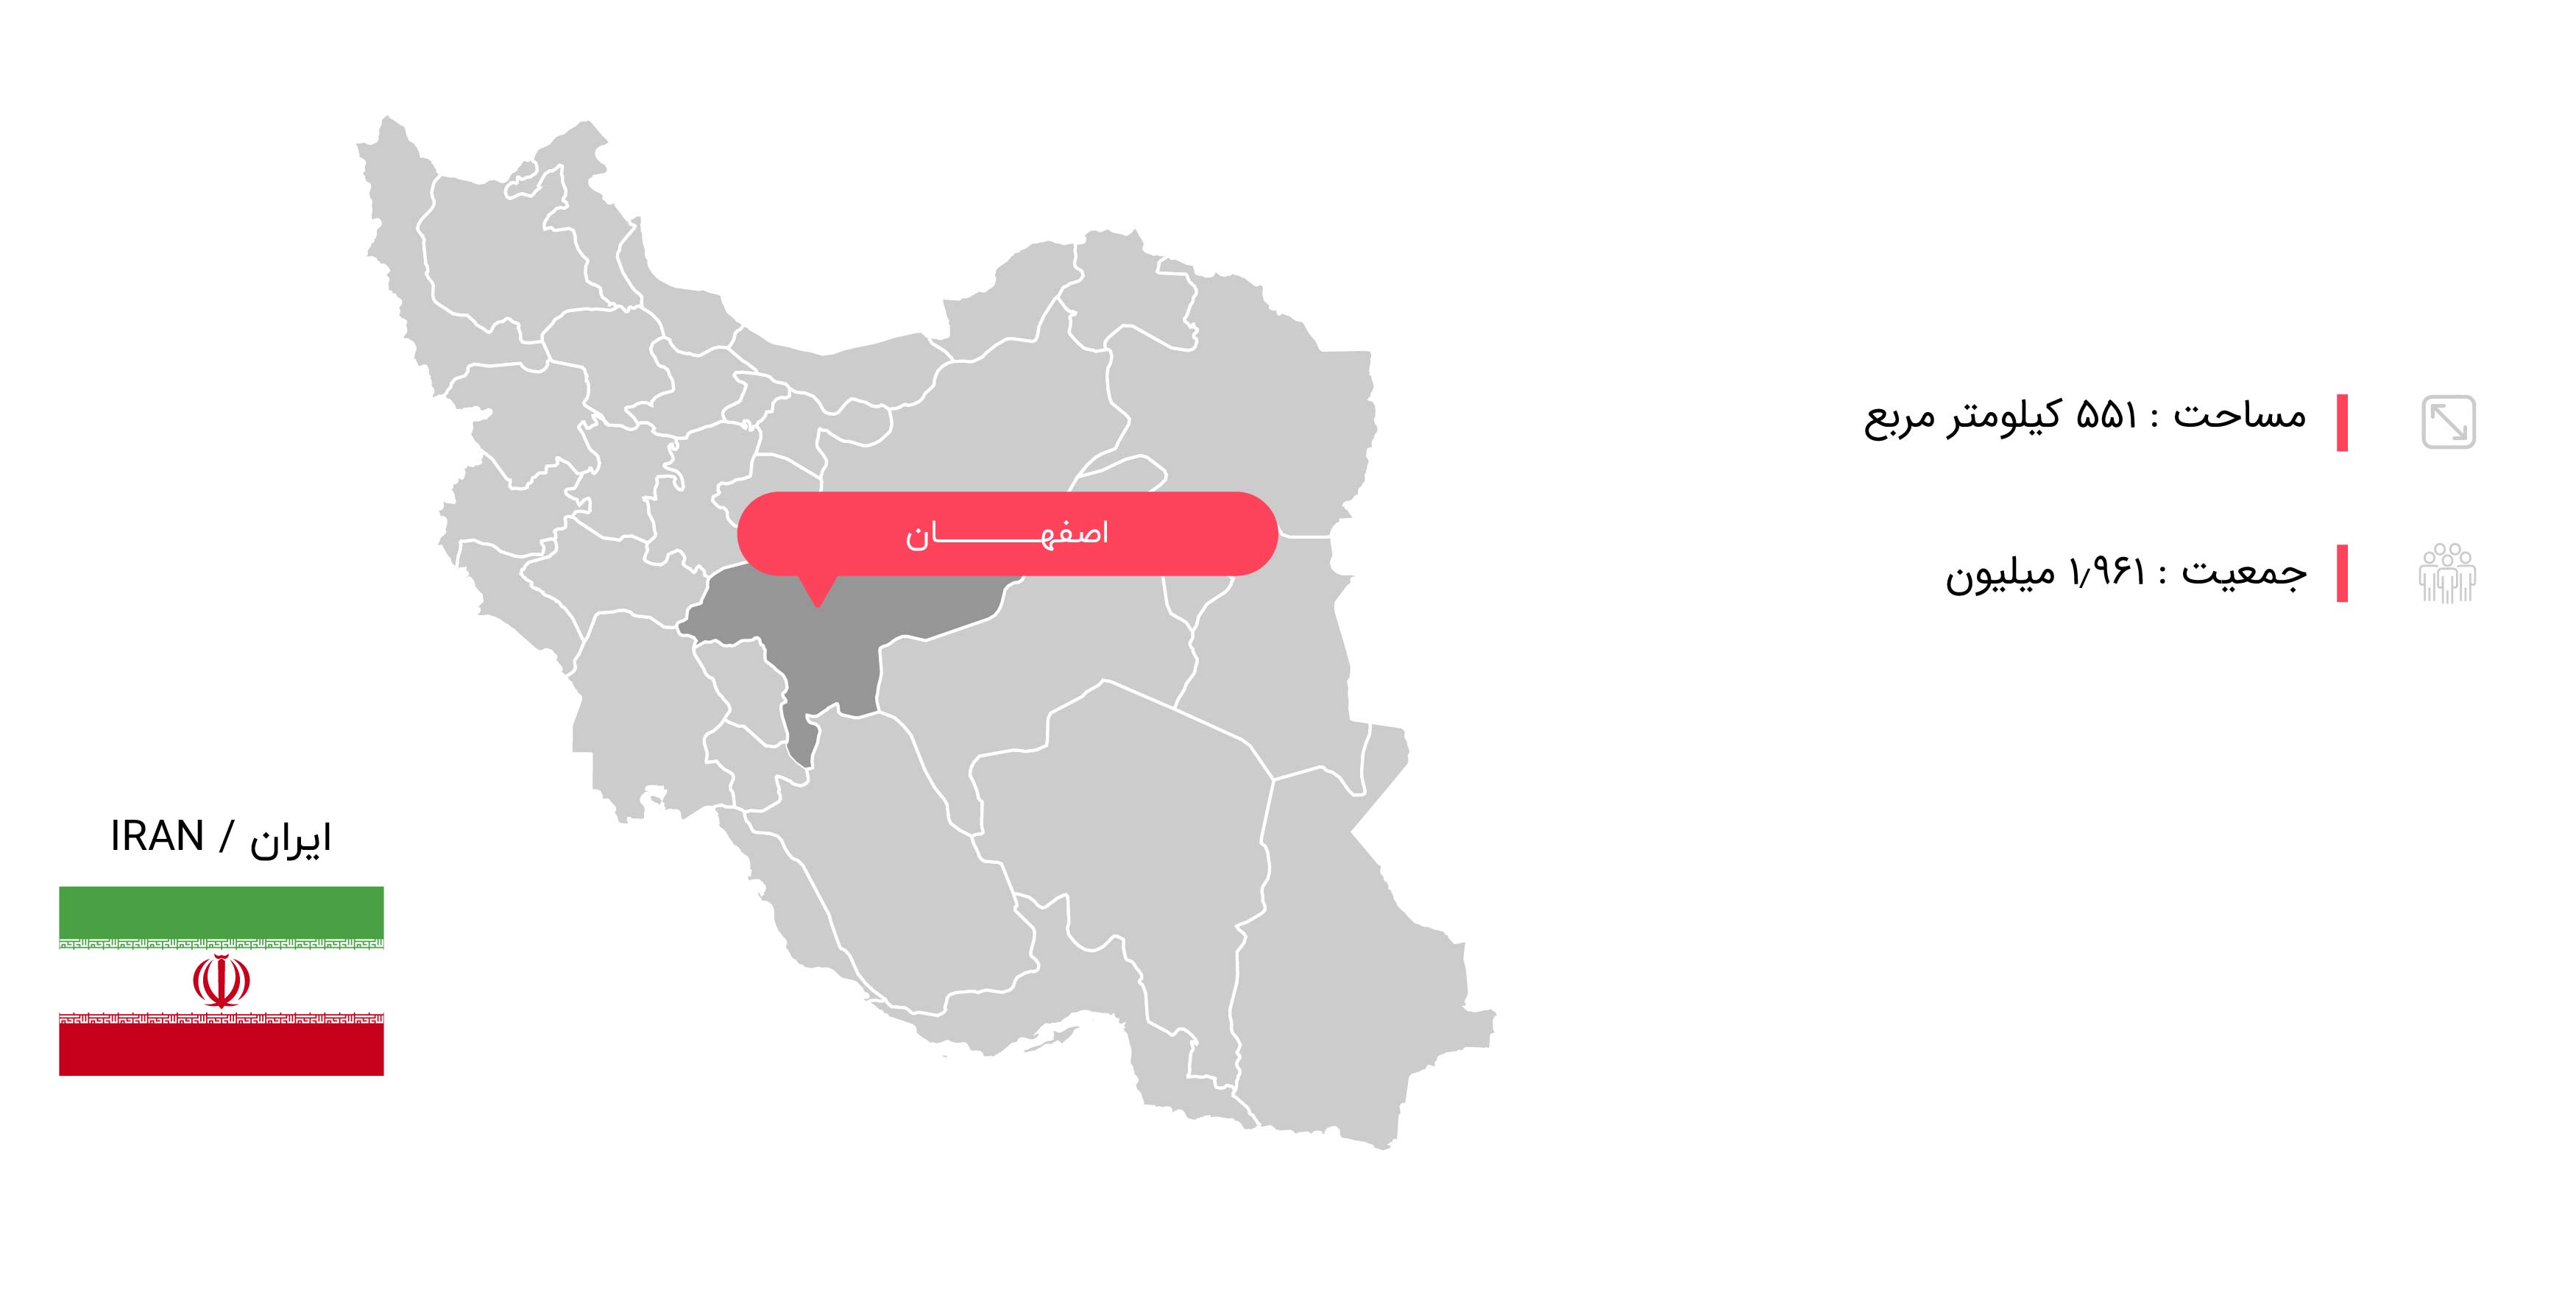  اطلاعات جغرافیایی اصفهان